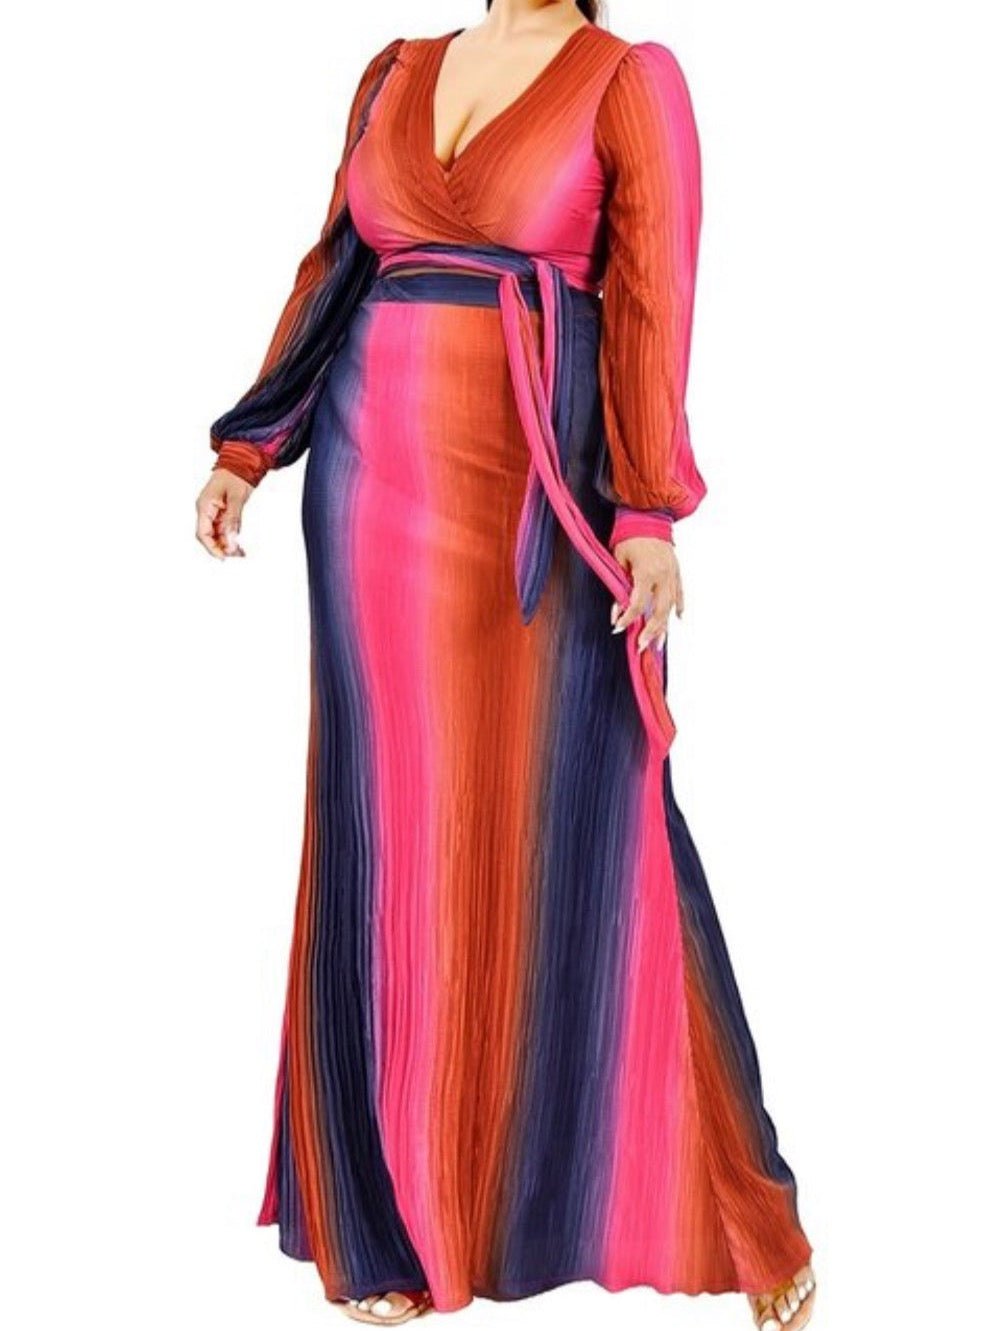 PLUS GRADIENT STRIPE 2 PIECE MAXI SKIRT SET - Fabulously Dressed Boutique 